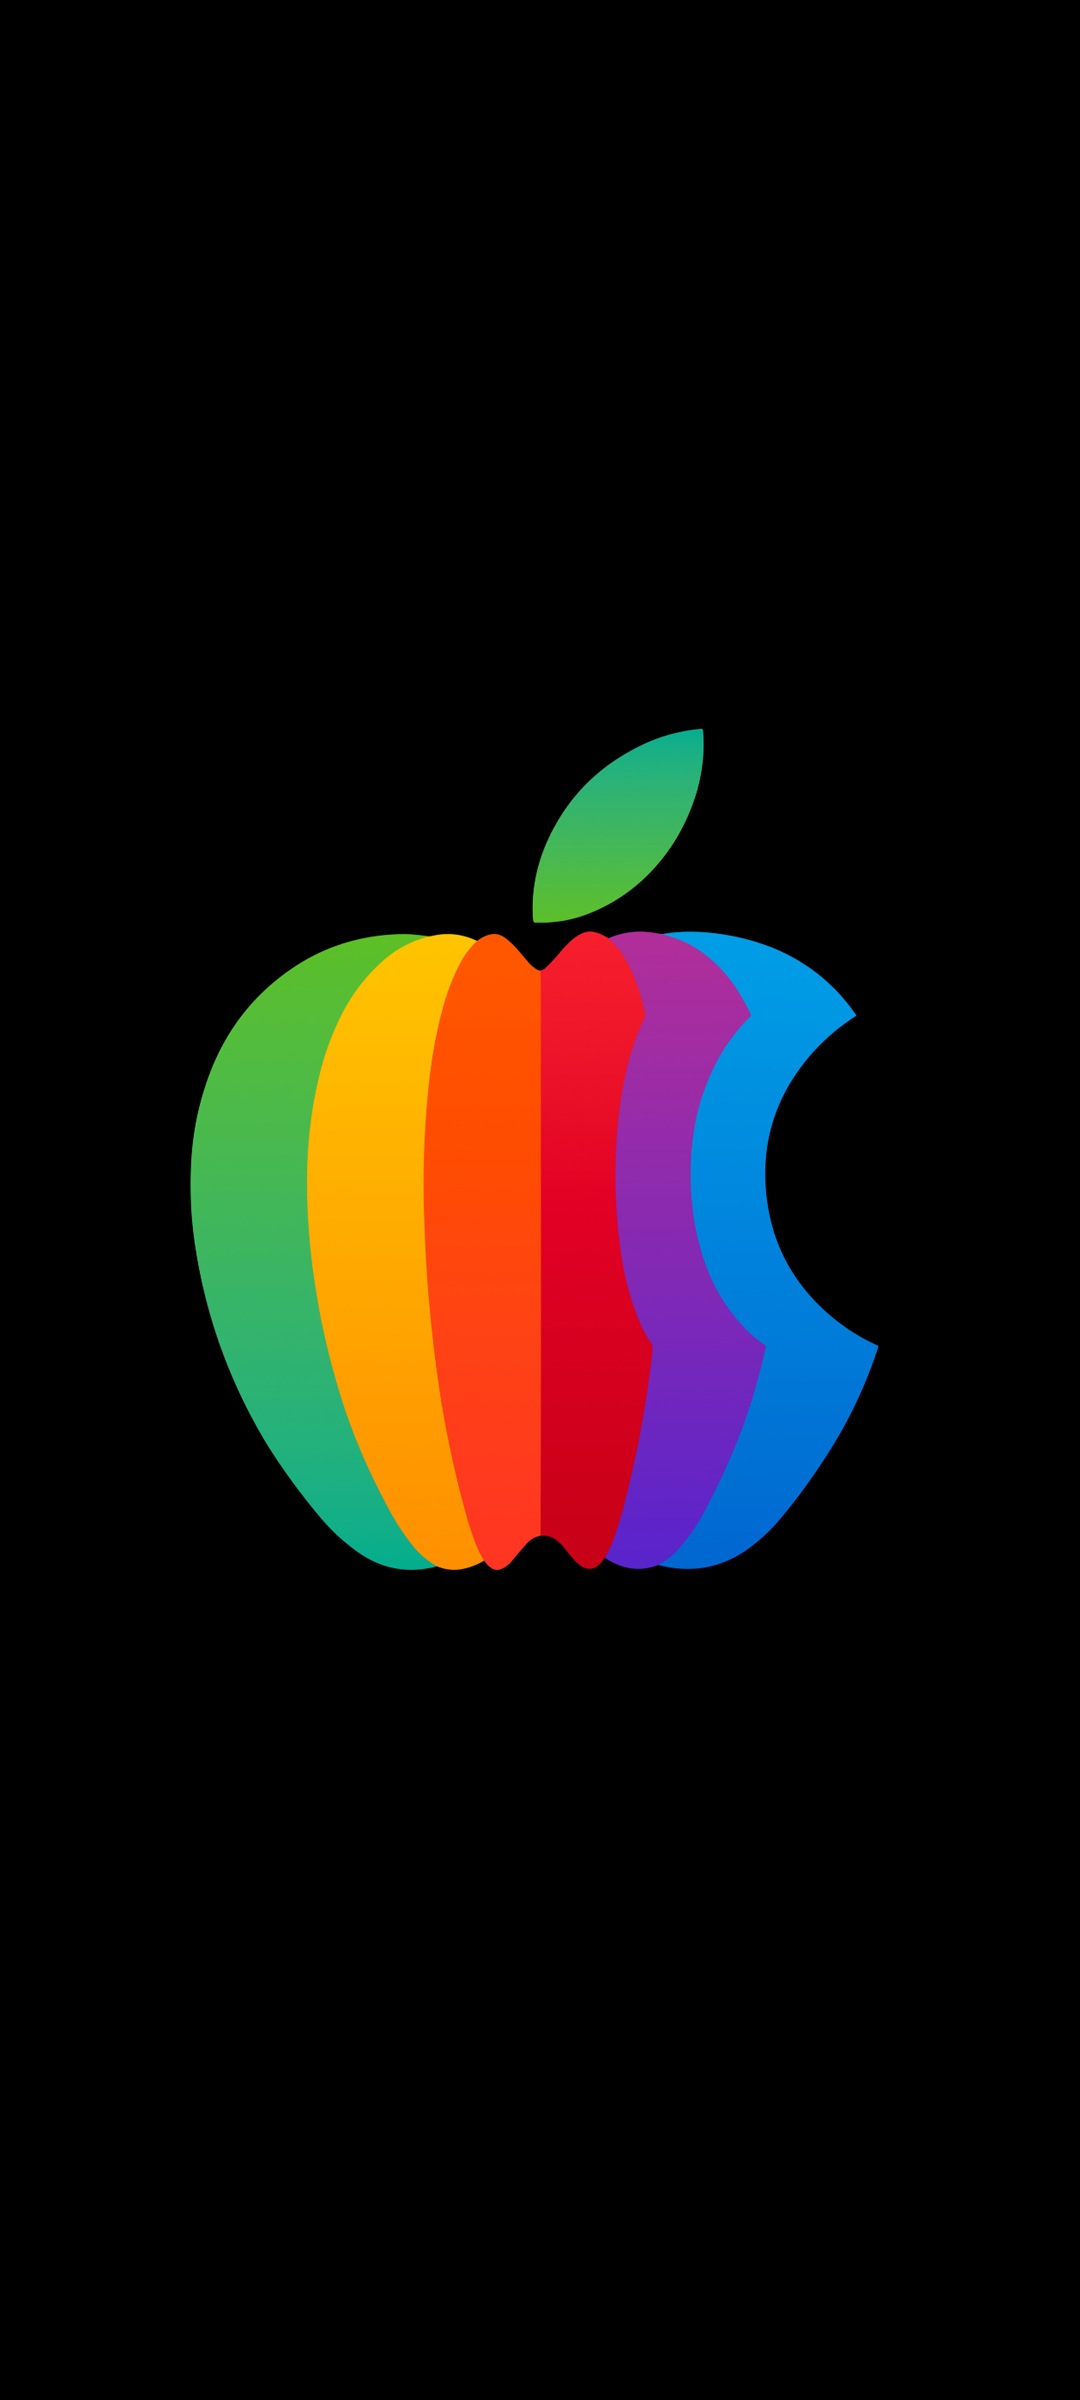 Apple彩色Logo 黑色背景苹果高清手机壁纸